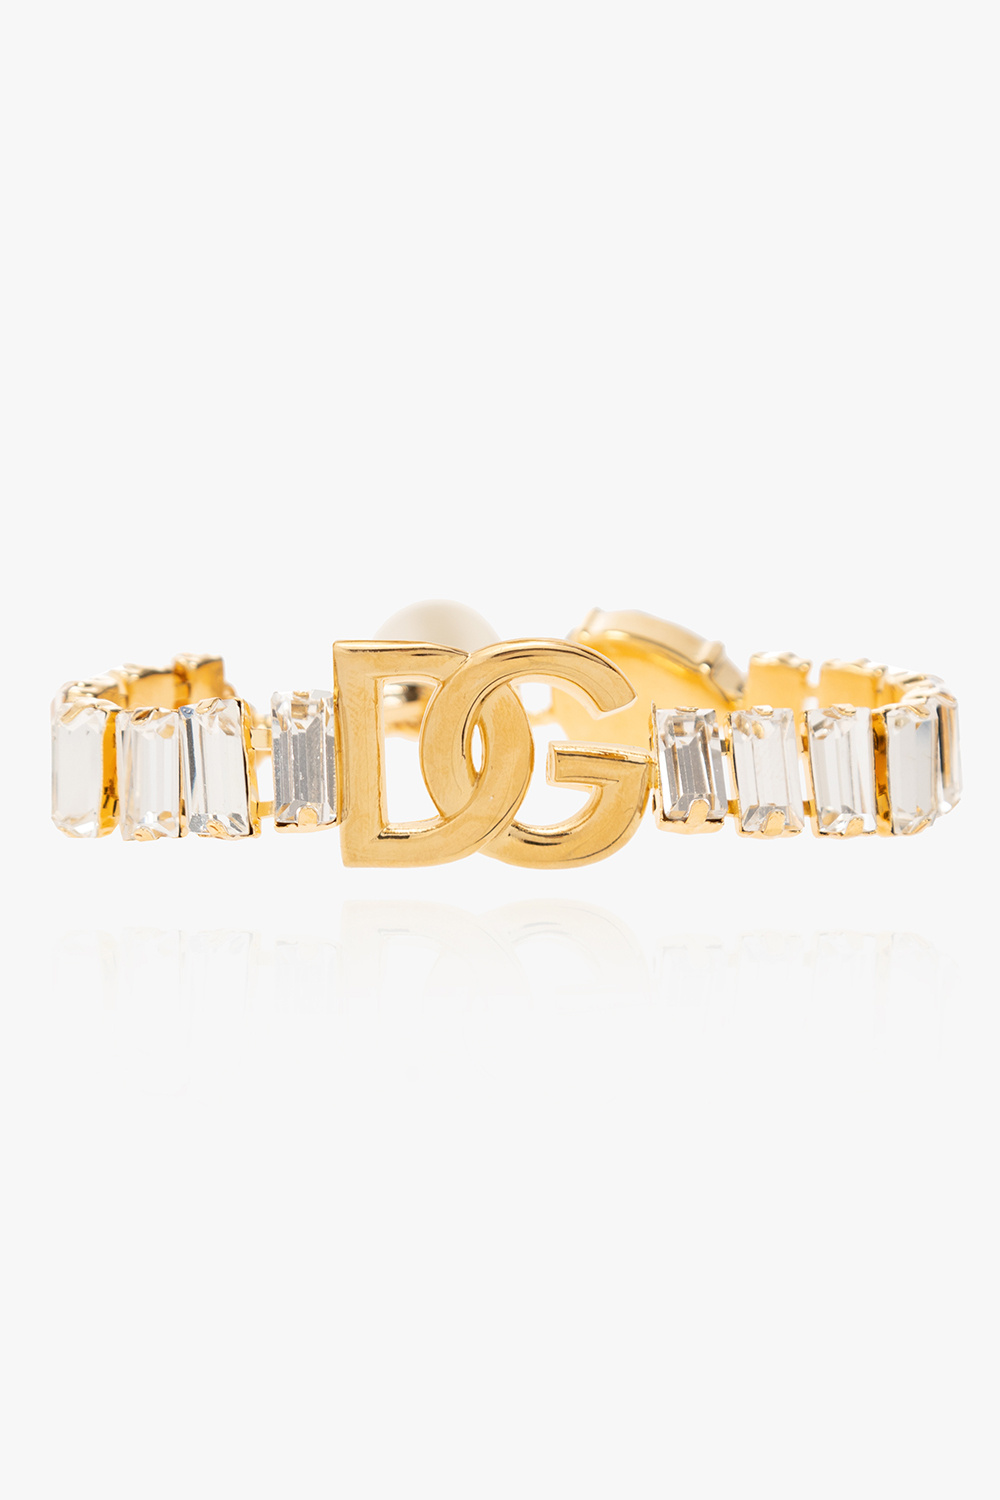 Dolce & Gabbana Brass bracelet with logo